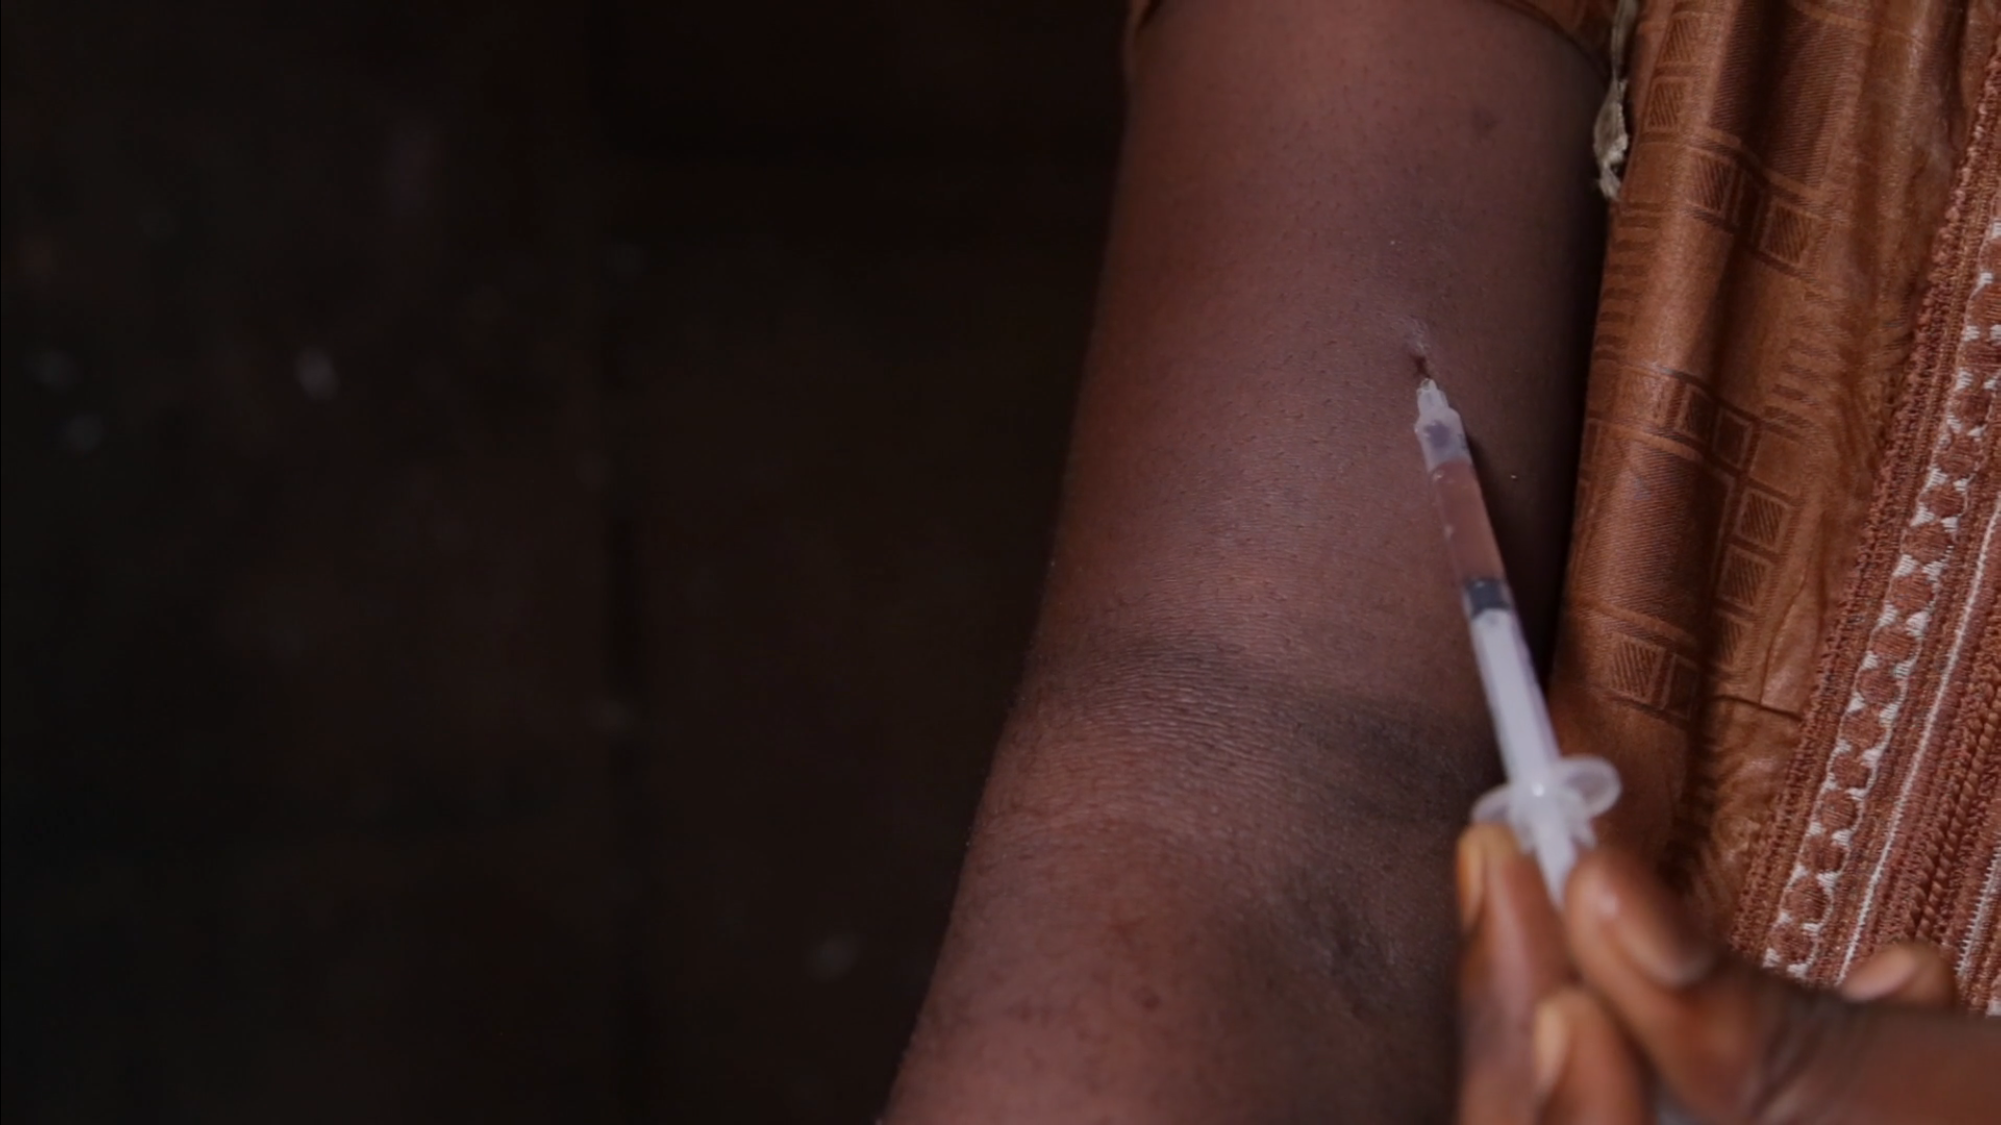 CONSOMMATION DE DROGUE DURE AU SENEGAL- Le chiffre alarmant de 1324 usagers à Dakar, méthodes de lutte étonnantes mais efficaces